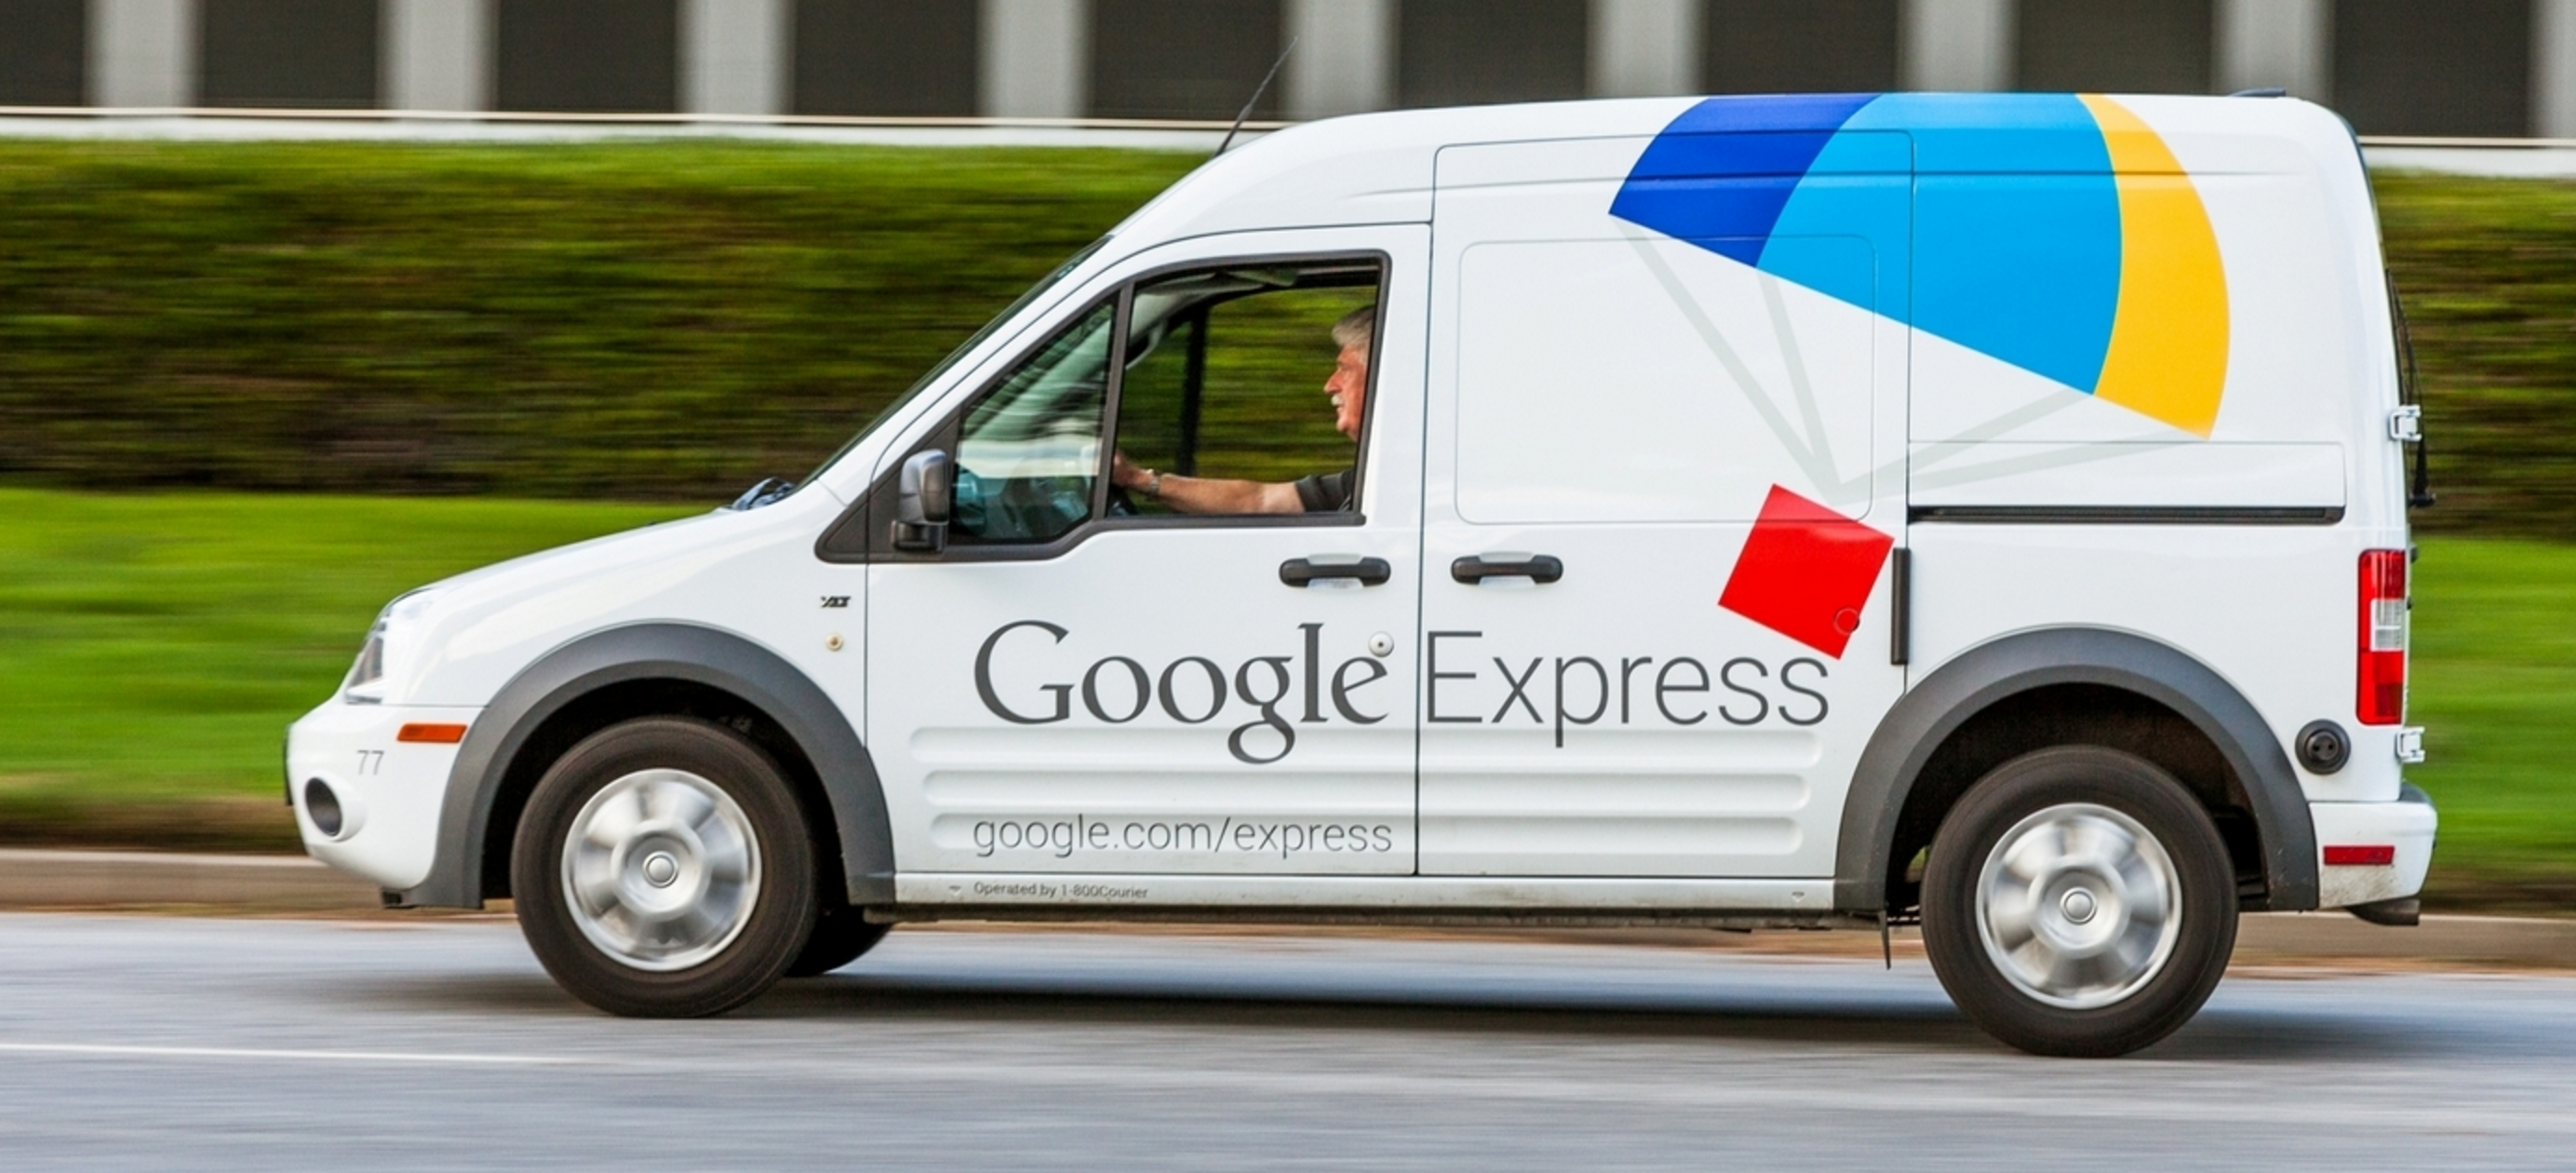 Google Express takes Amazon Prime Now head-on